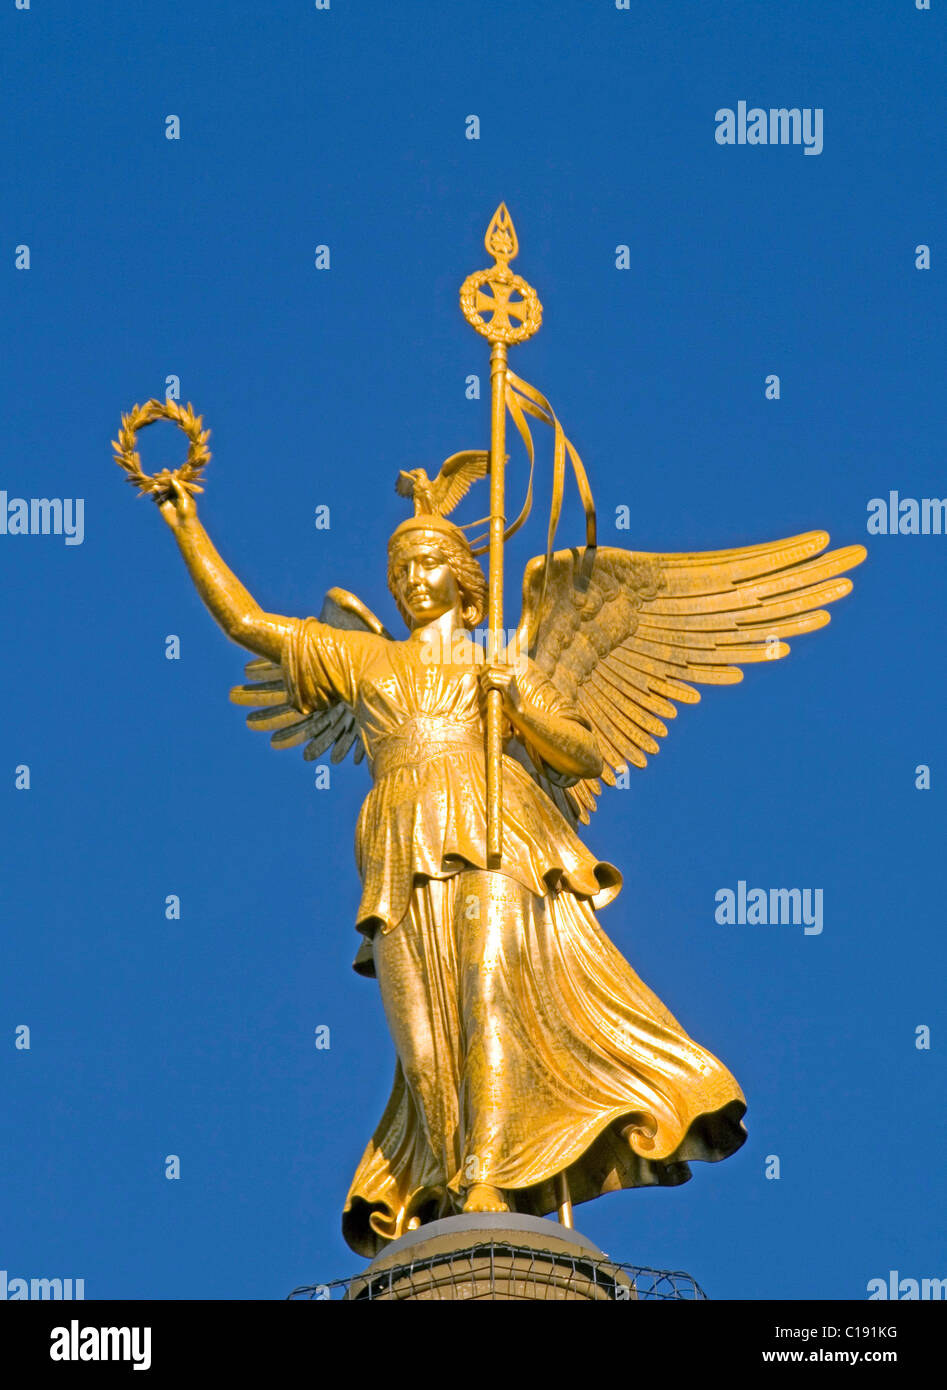 Goldelse, sculpture en bronze sur le dessus de la colonne de la Victoire, Siegessaeule, Berlin Mitte, Berlin, Germany, Europe Banque D'Images